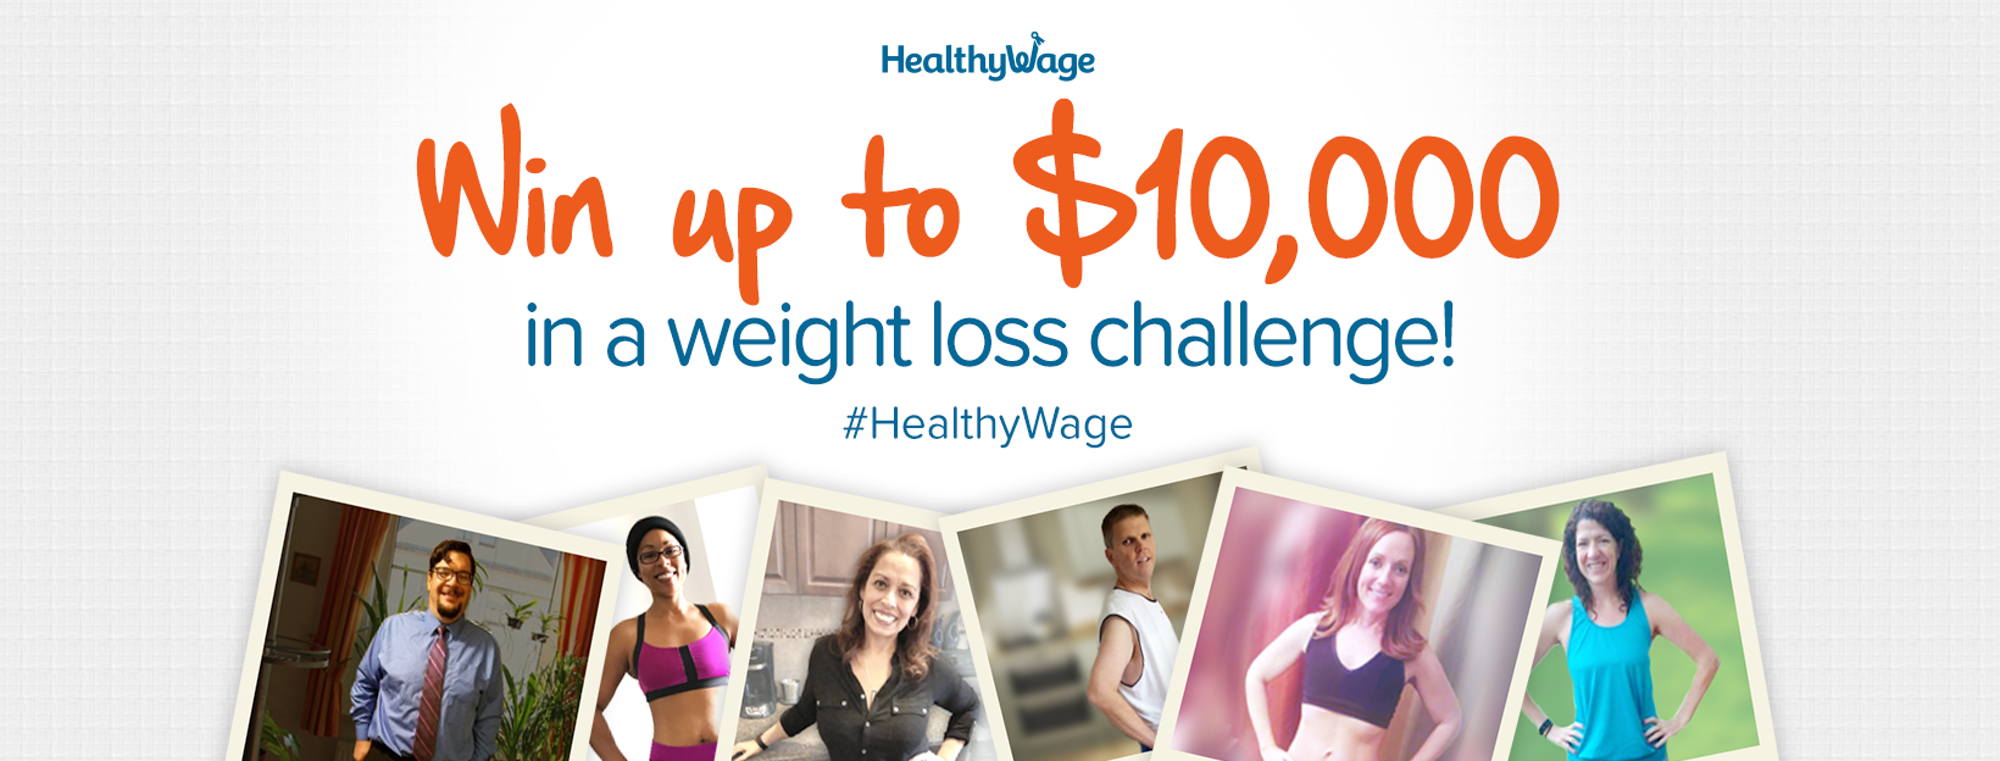 Healthywage Challenge